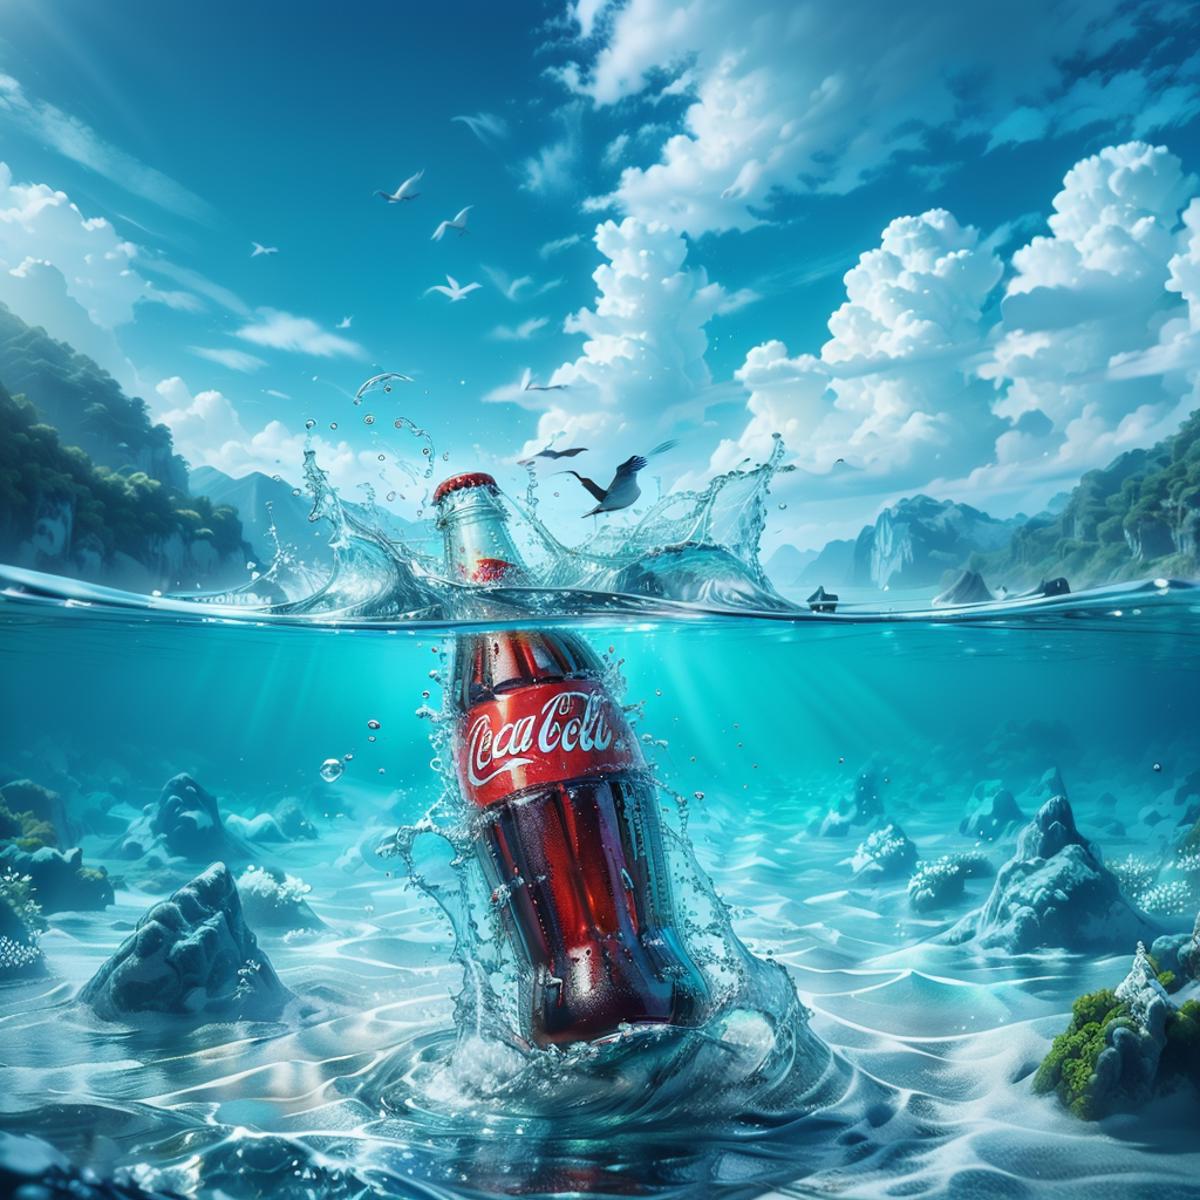 NORFLEET Coke commercials image by norfleetzzc